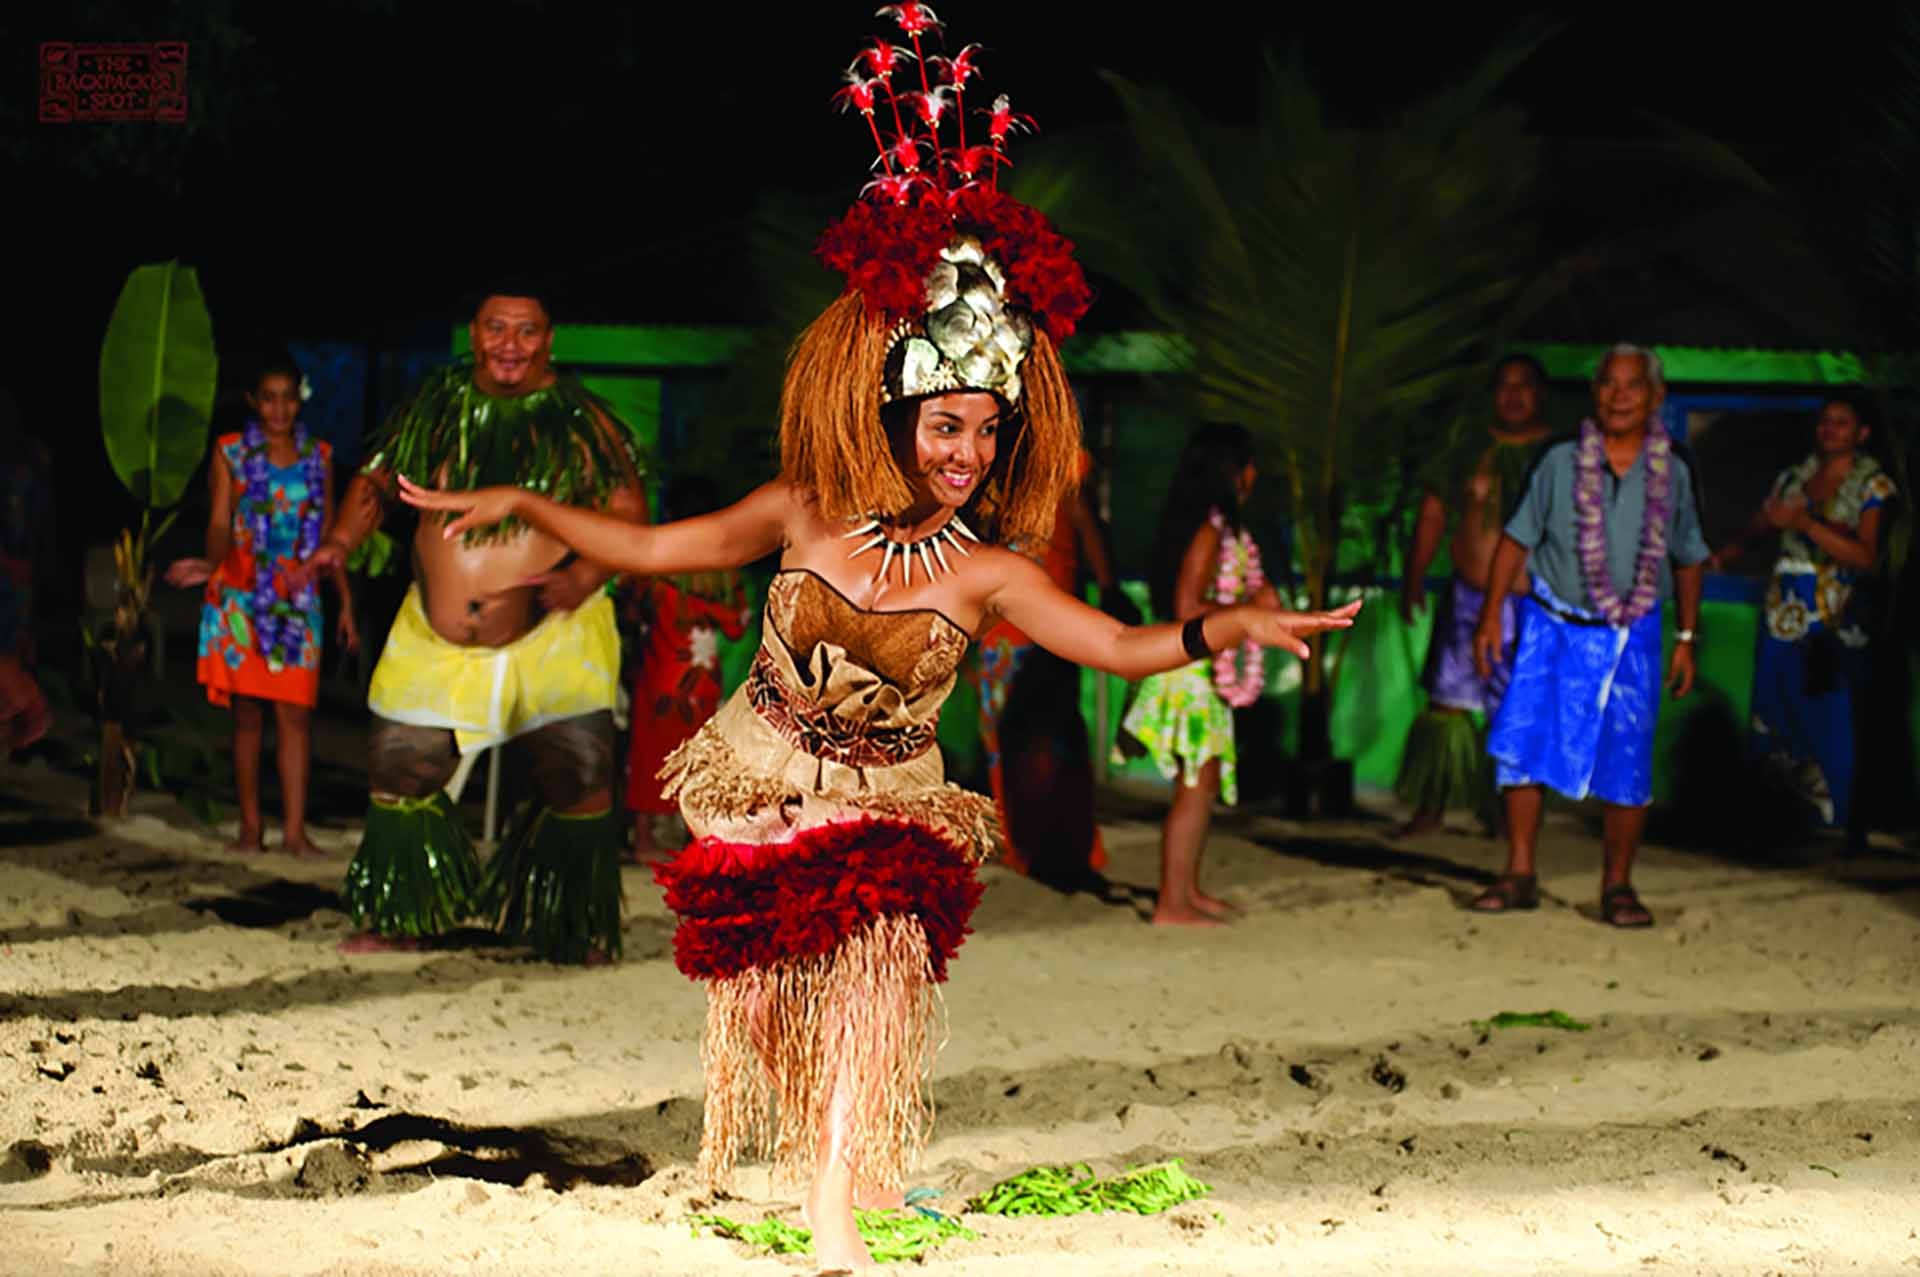 Văn hóa Polynesia của Hawaii mang nhiều nét đặc sắc. Ảnh: Pinterest